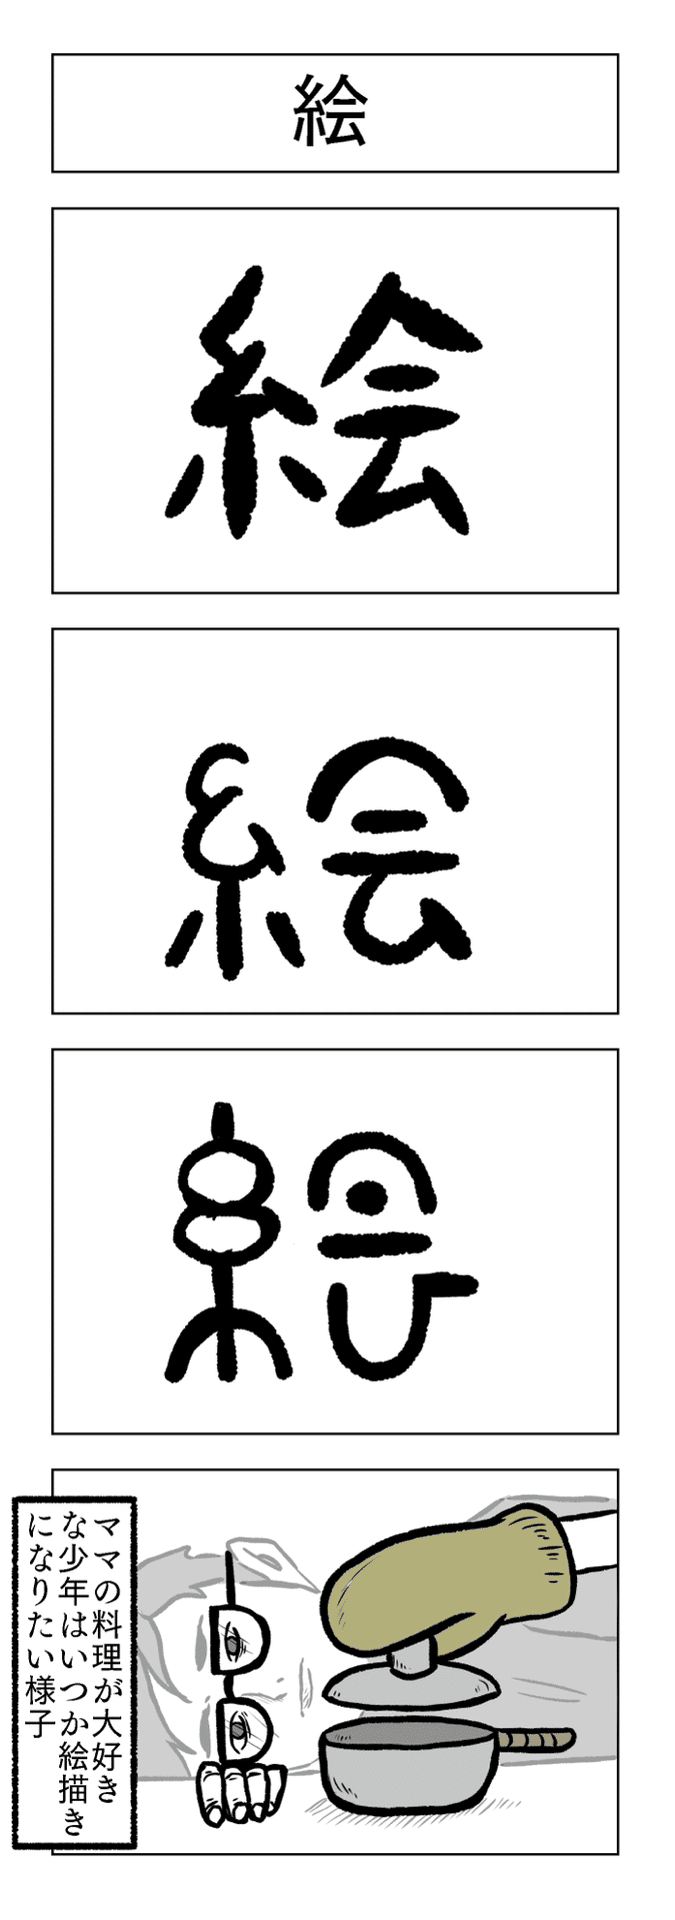 漢字の成り立ち4コマ 絵 小山コータロー Note